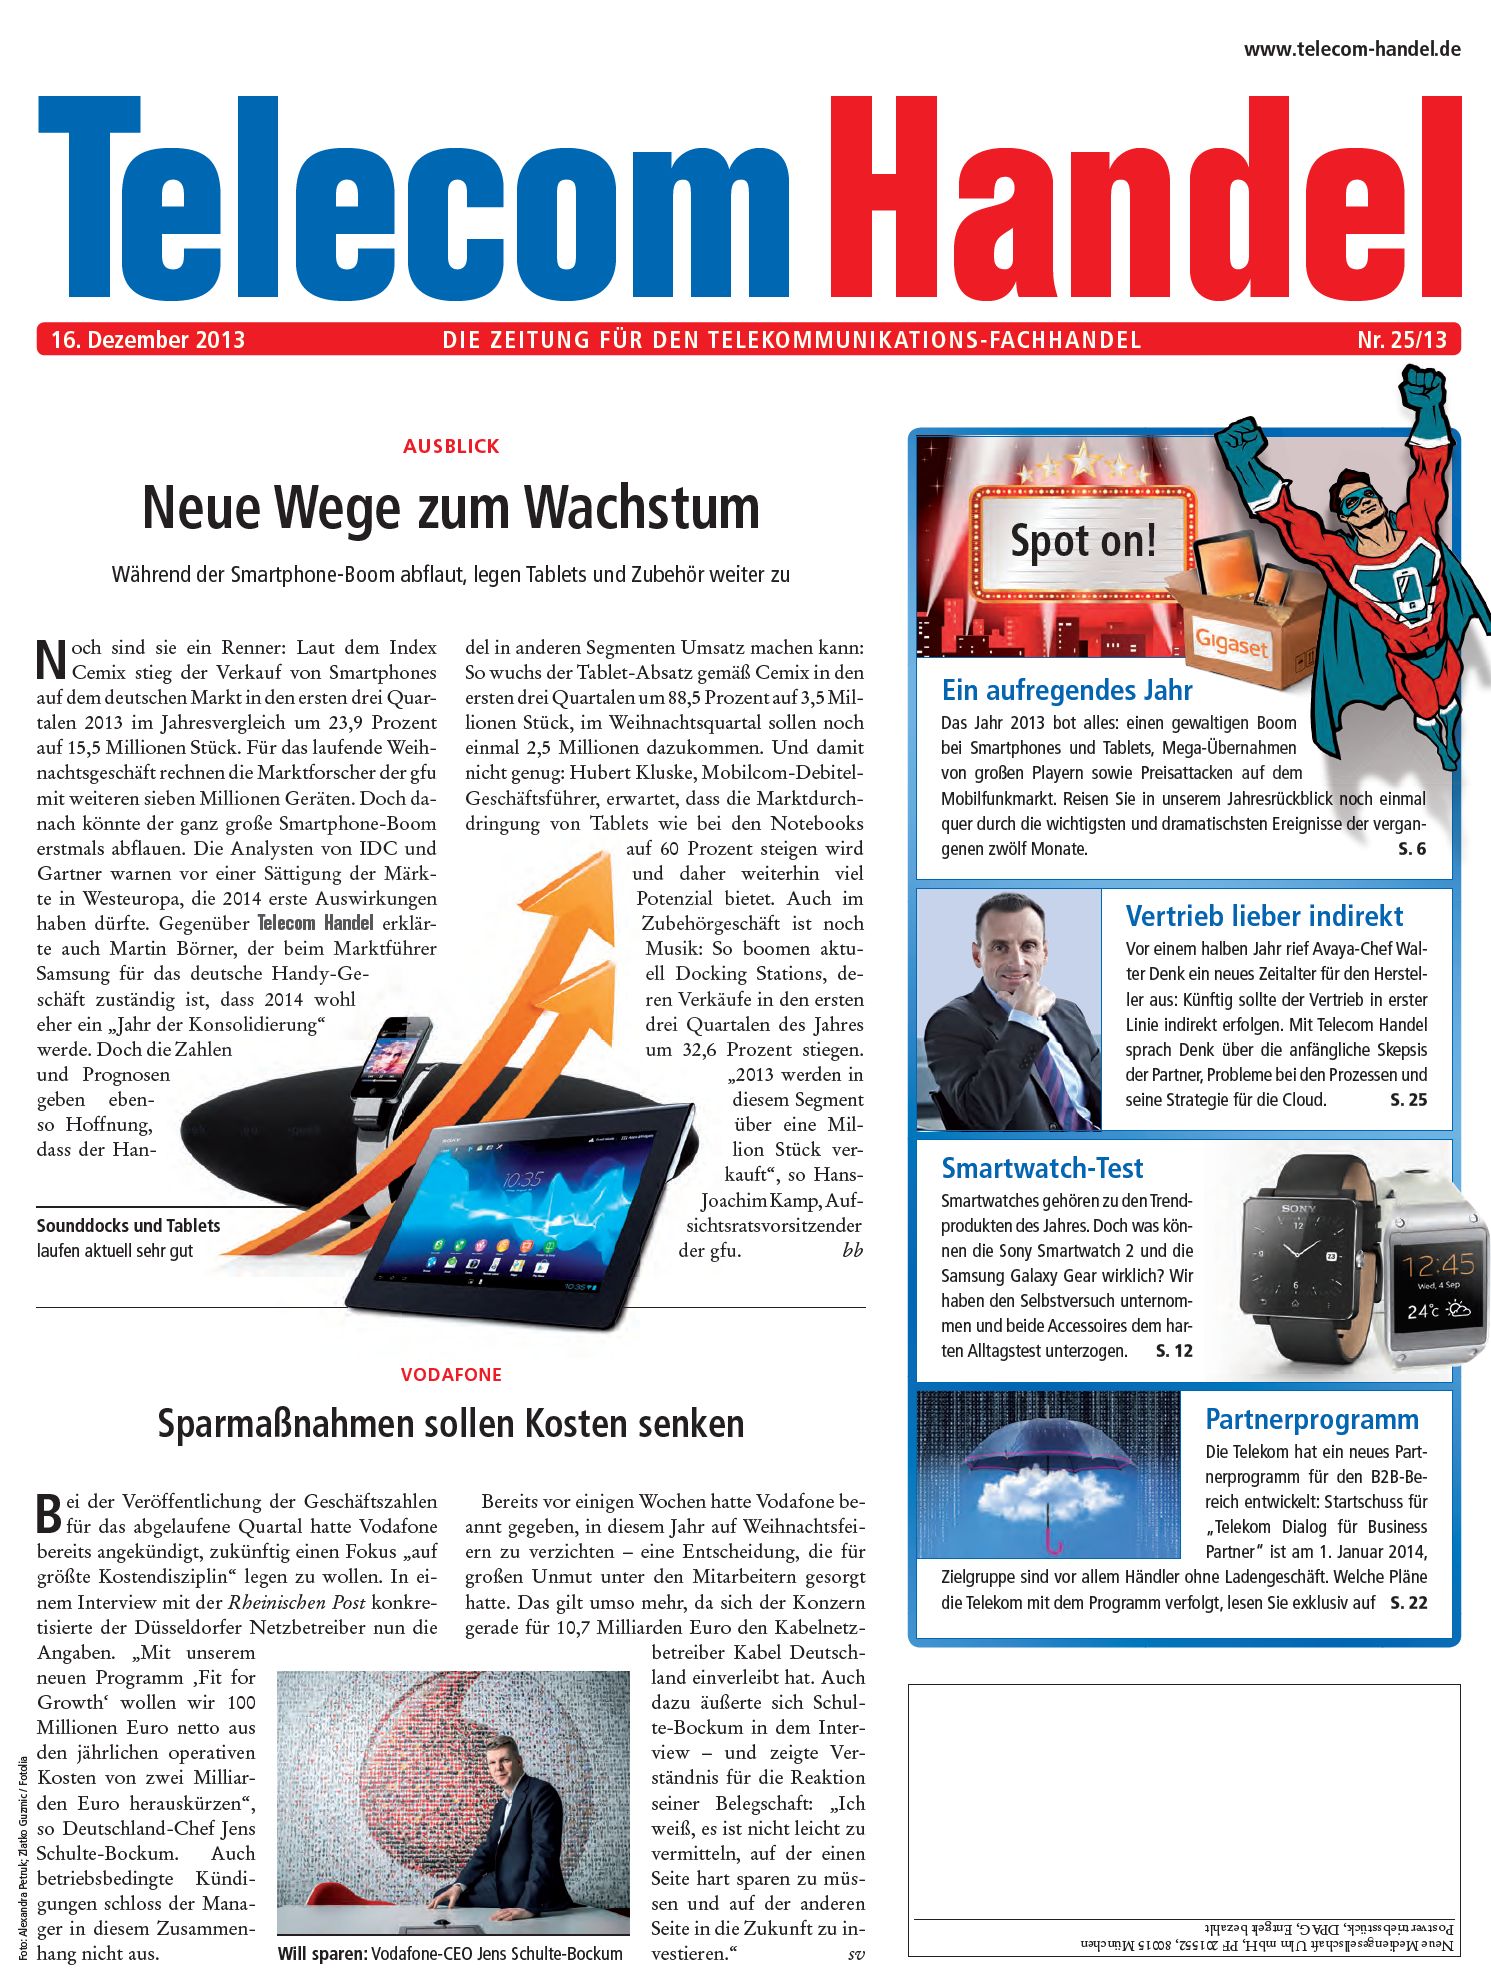 Telecom Handel Ausgabe 25/2013